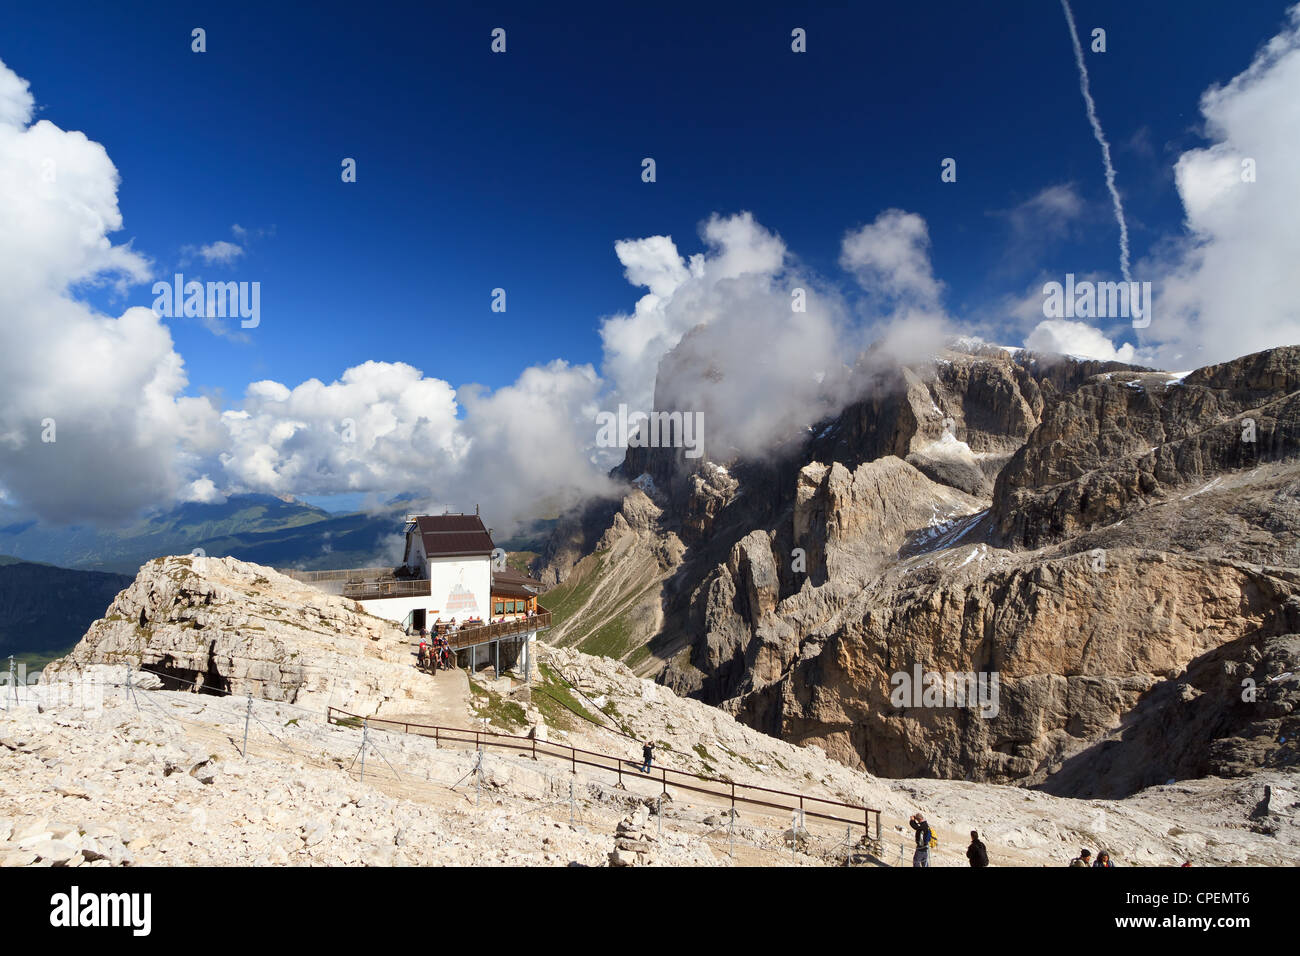 Estate vista del Monte Rosetta con la stazione della funivia e il ristorante, San Martino di Castrozza, Trentino, Italia Foto Stock